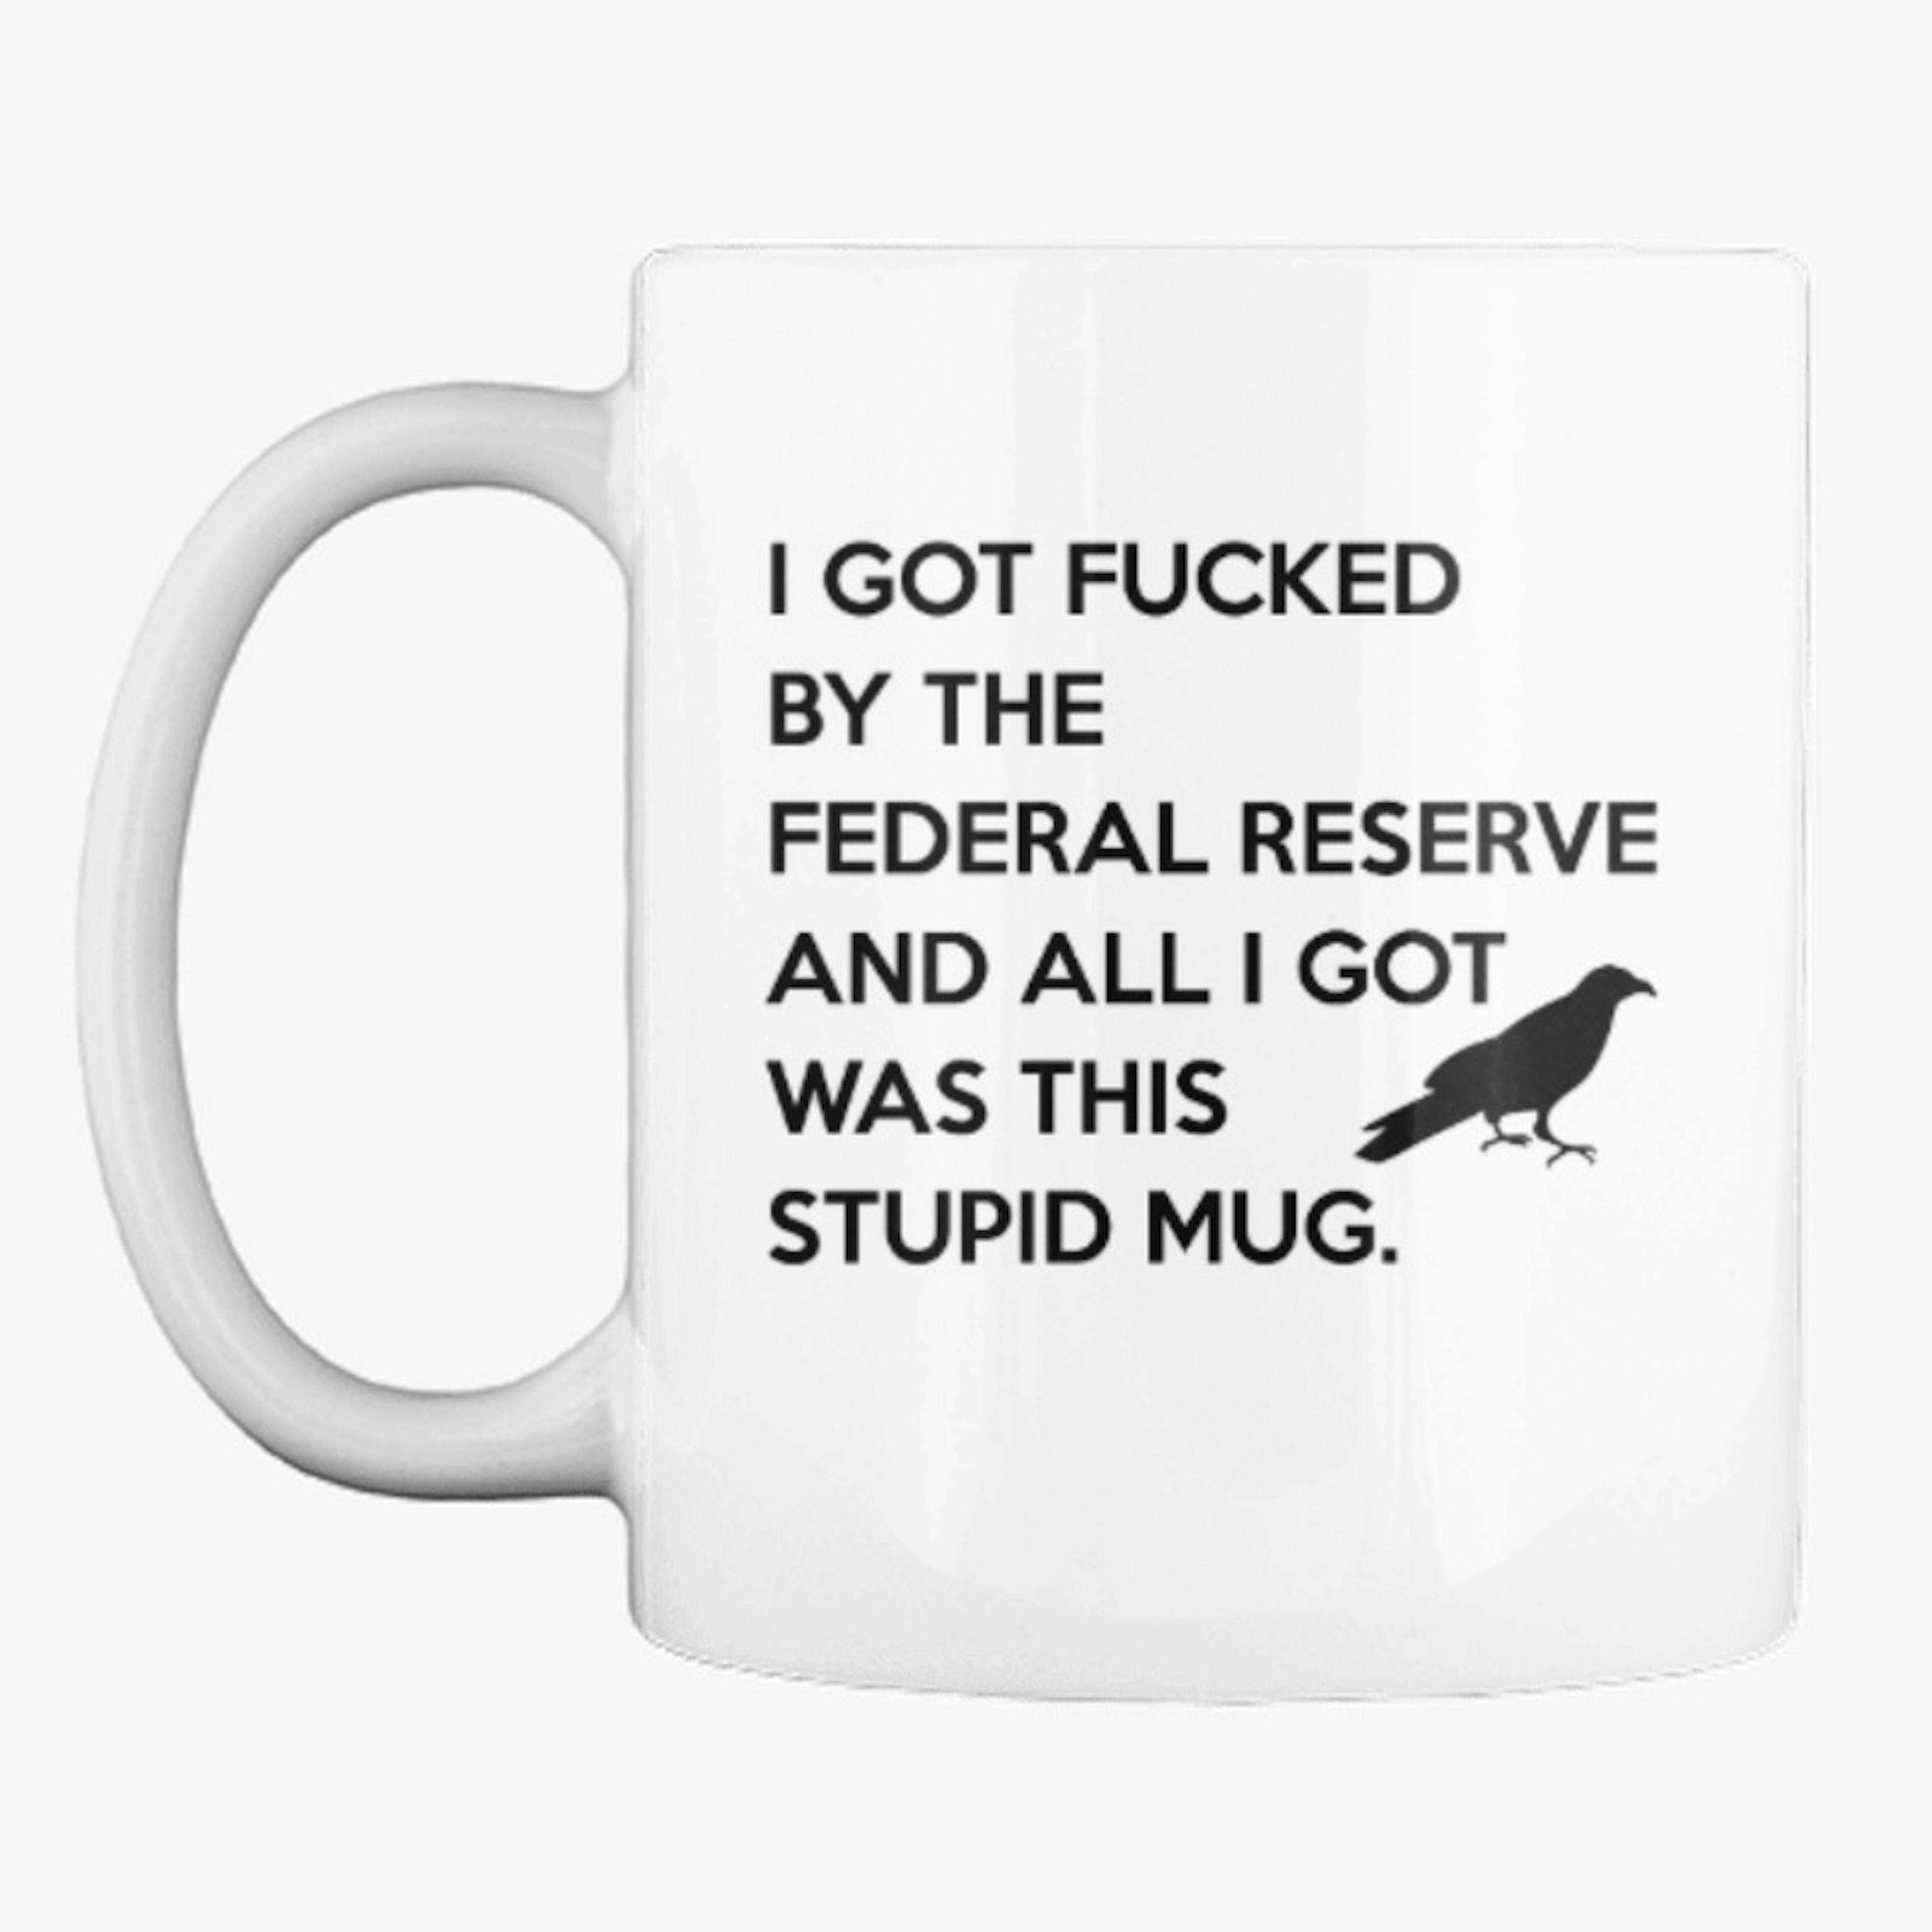 The Stupid Mug